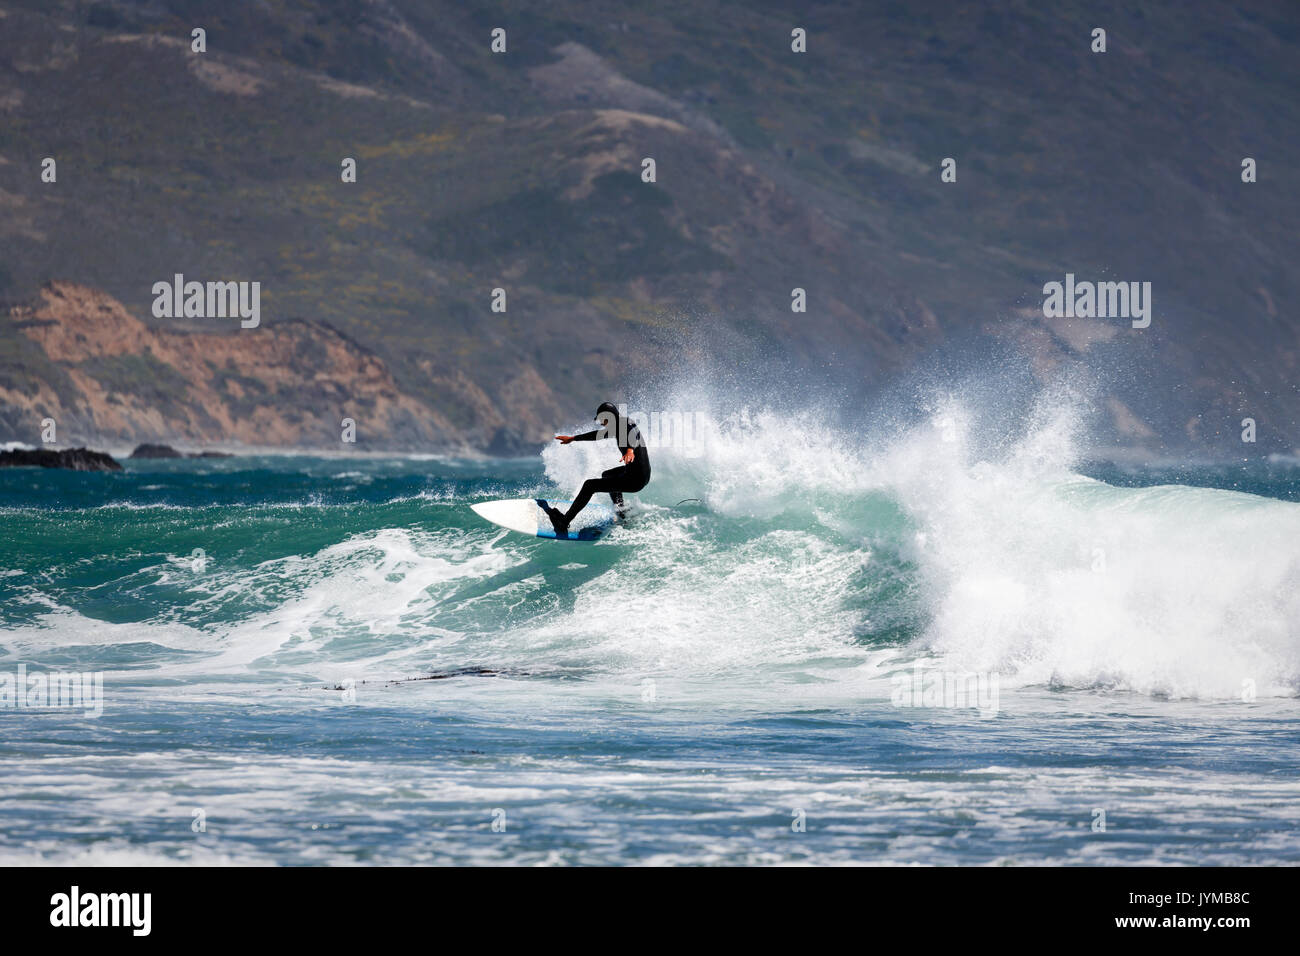 Kaltes Wasser Surfer im schwarzen Anzug schneidet eine scharfe Kurve auf der Welle Stockfoto